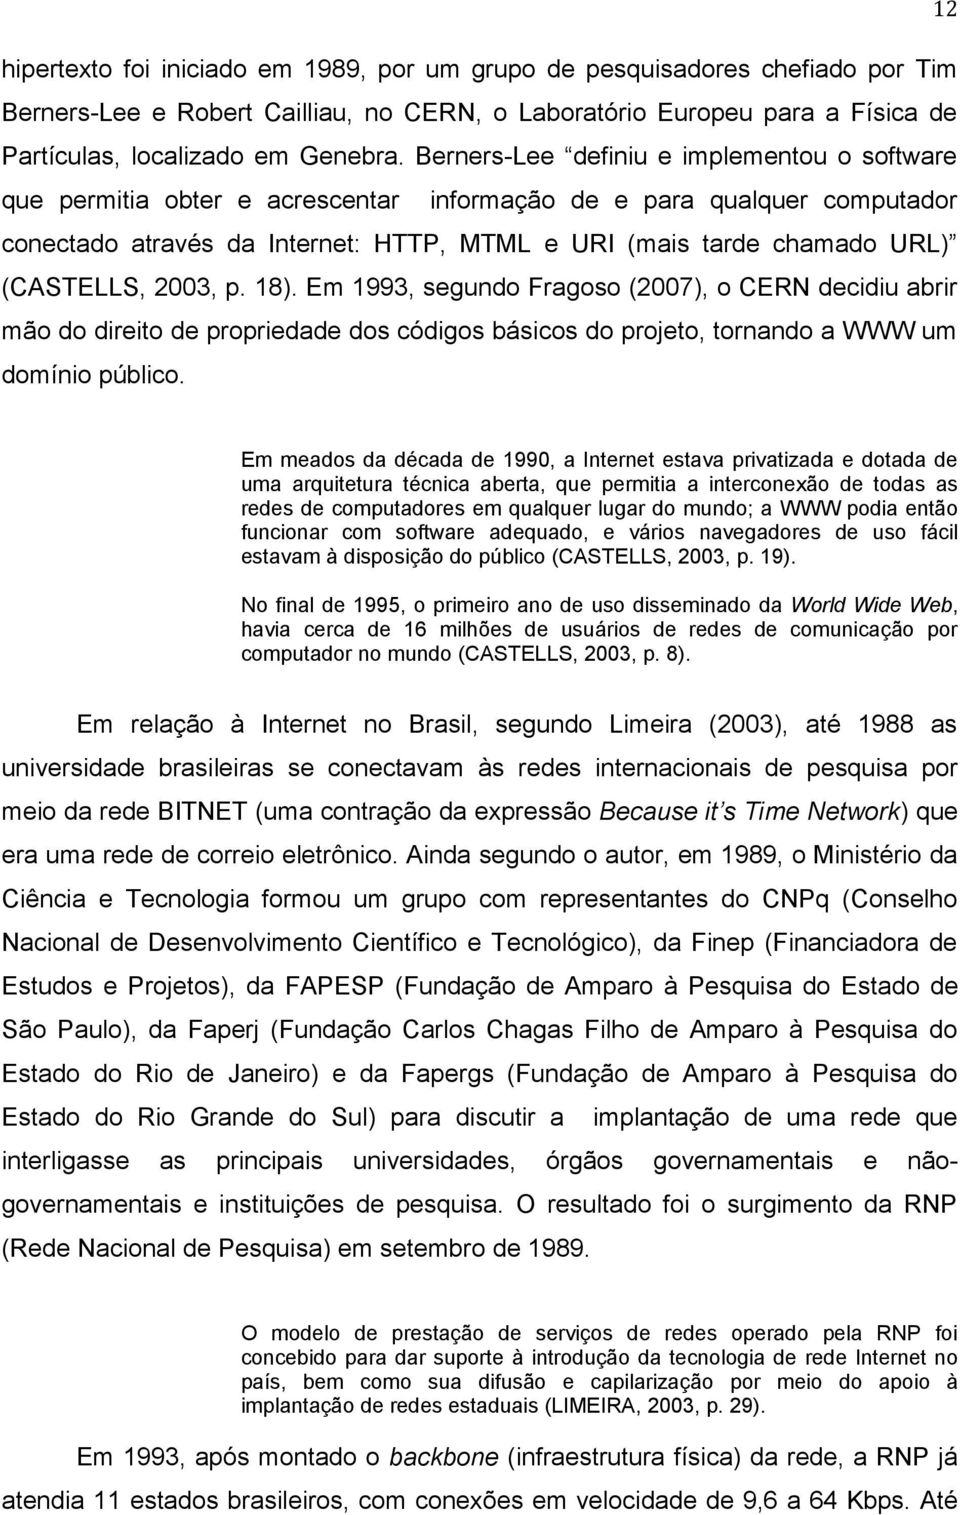 (CASTELLS, 2003, p. 18). Em 1993, segundo Fragoso (2007), o CERN decidiu abrir mão do direito de propriedade dos códigos básicos do projeto, tornando a WWW um domínio público.